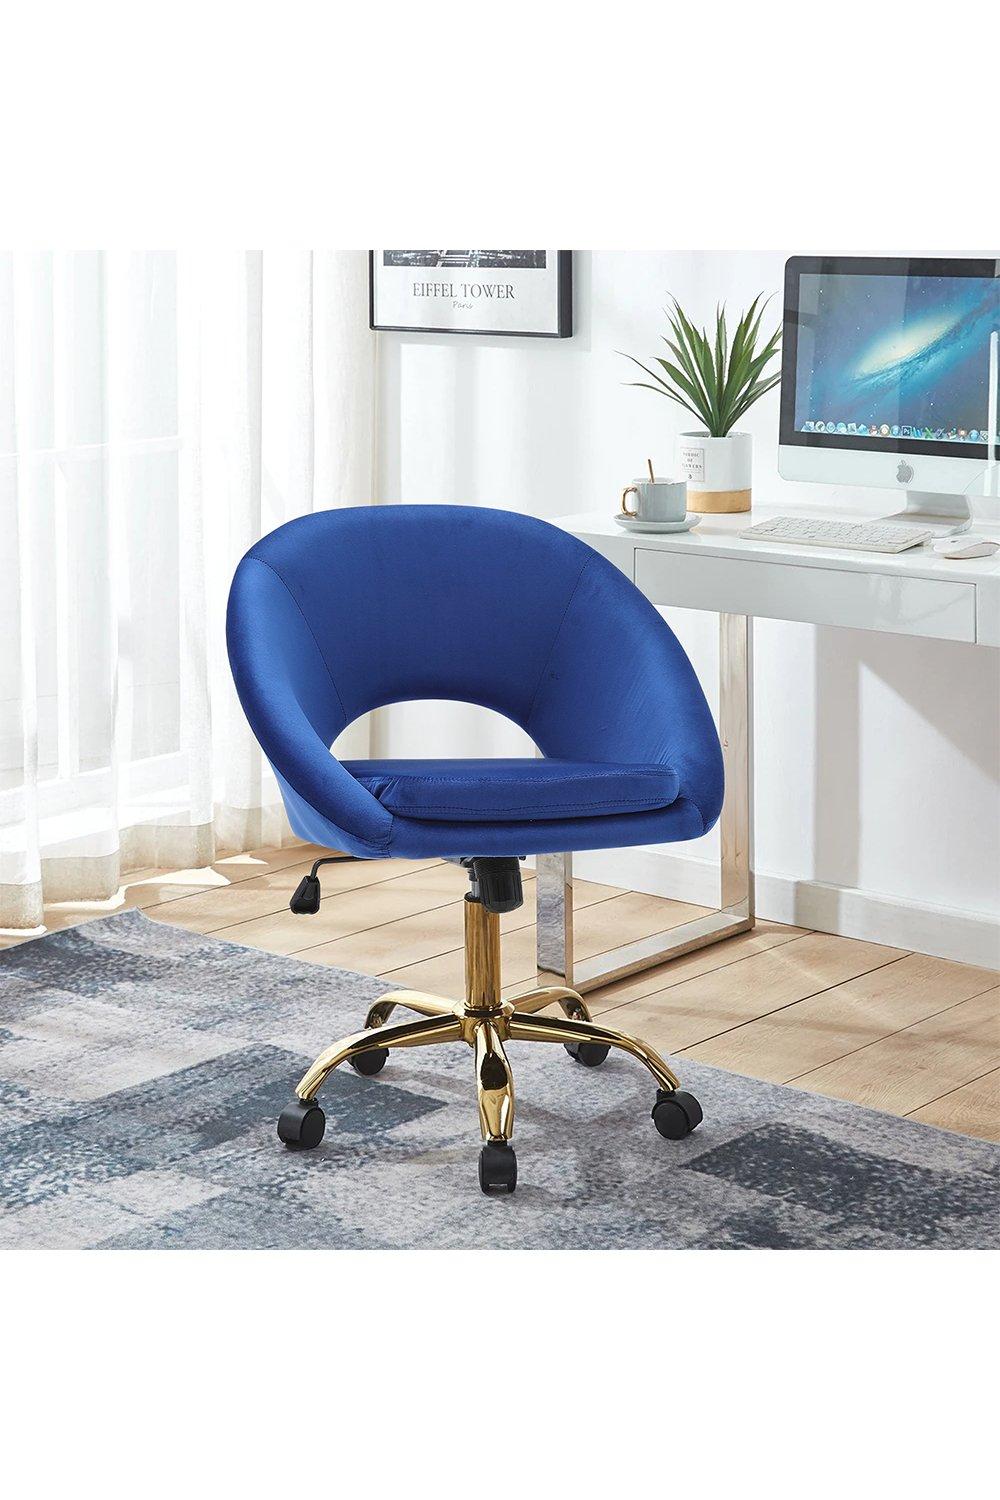 Blue Velvet Swivel Office Chair Height Adjustable for Home Office